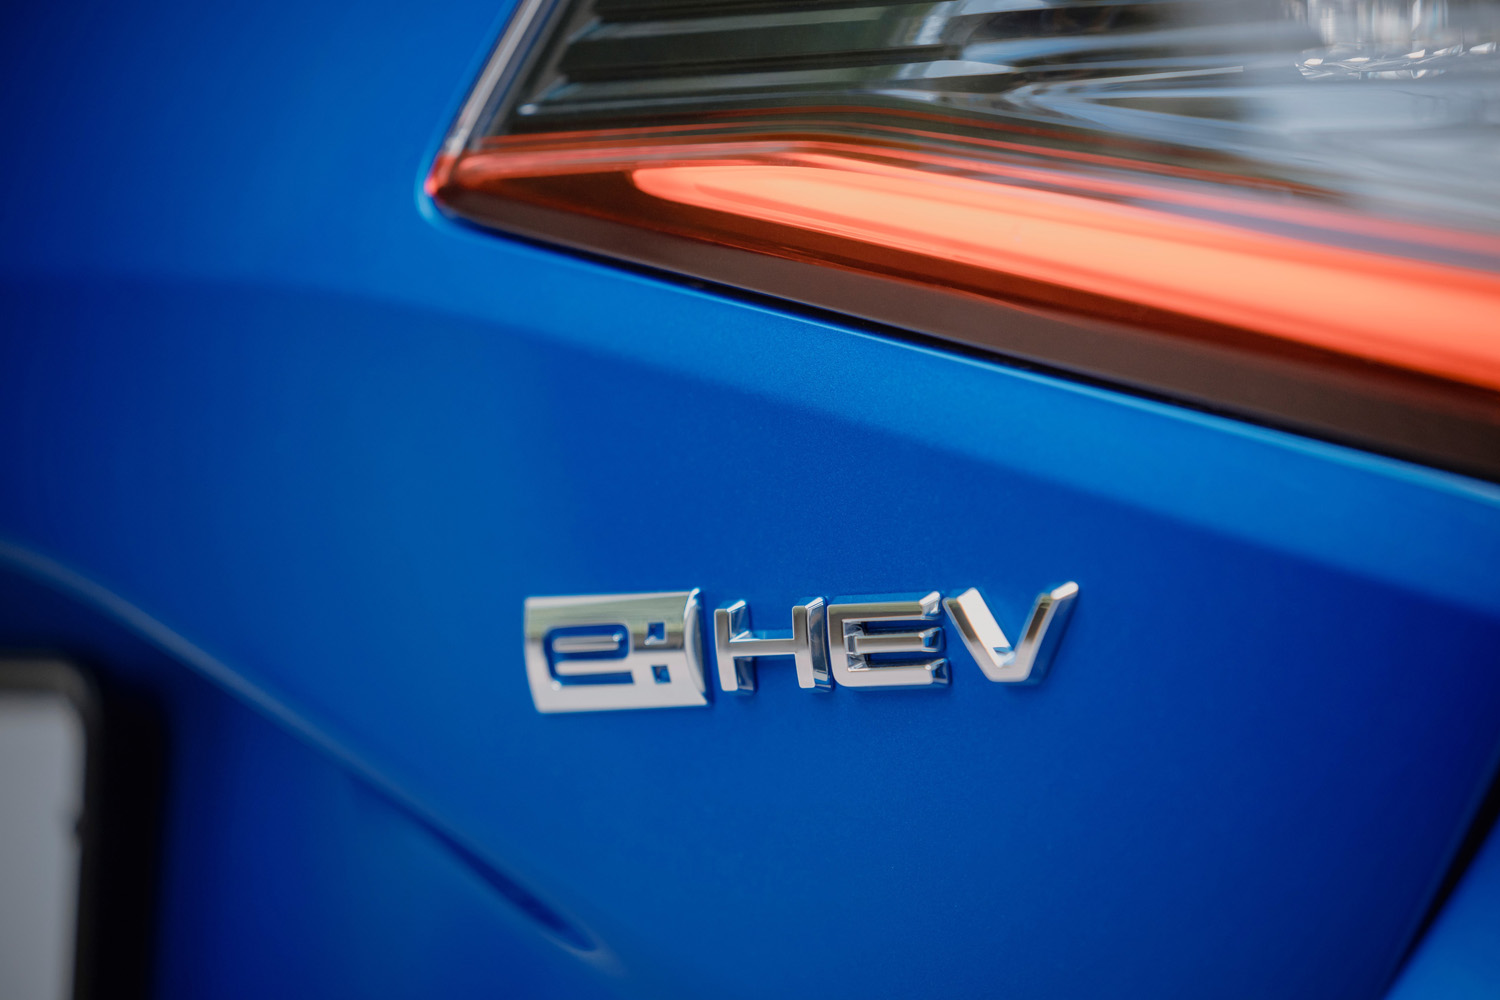 2022 Honda Civic e:HEV rear badge